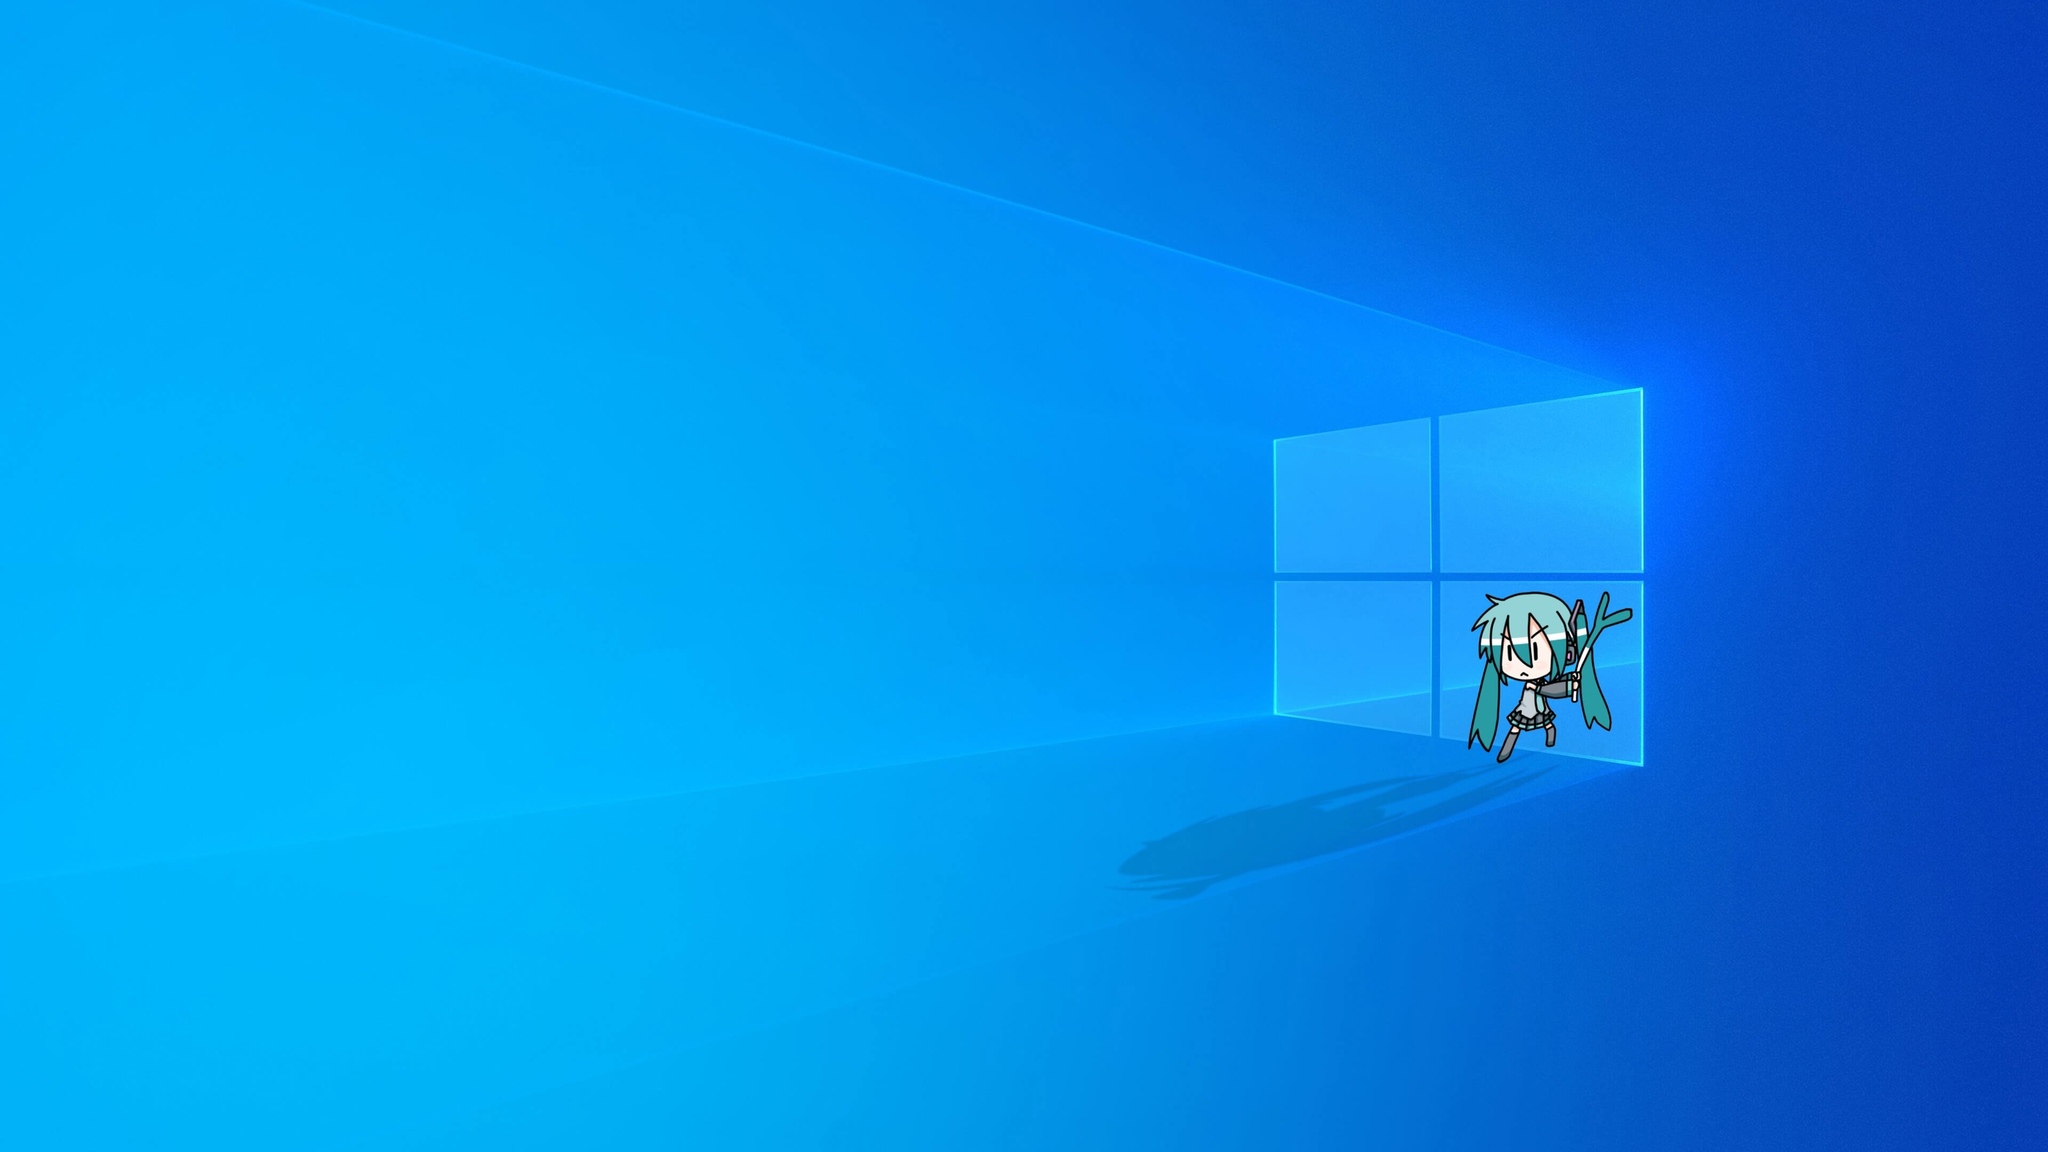 Как поменять изображение на рабочем столе Windows 10? — Хабр Q&A